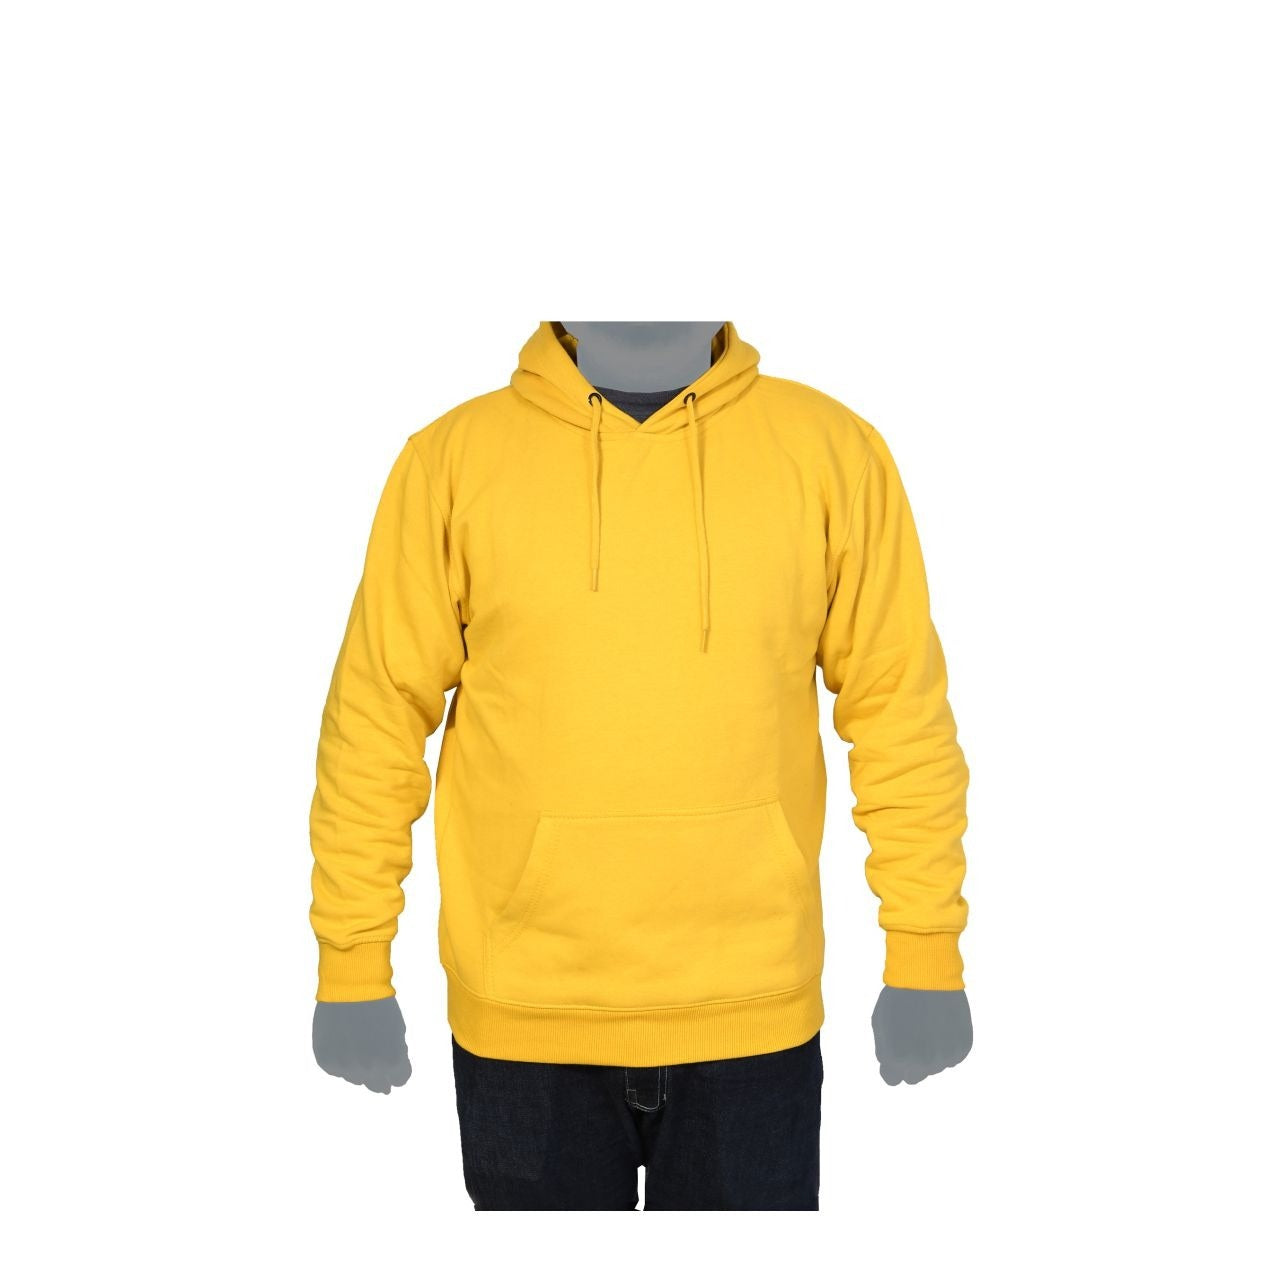 Yellow Fleece Hoodies Sweatshirt